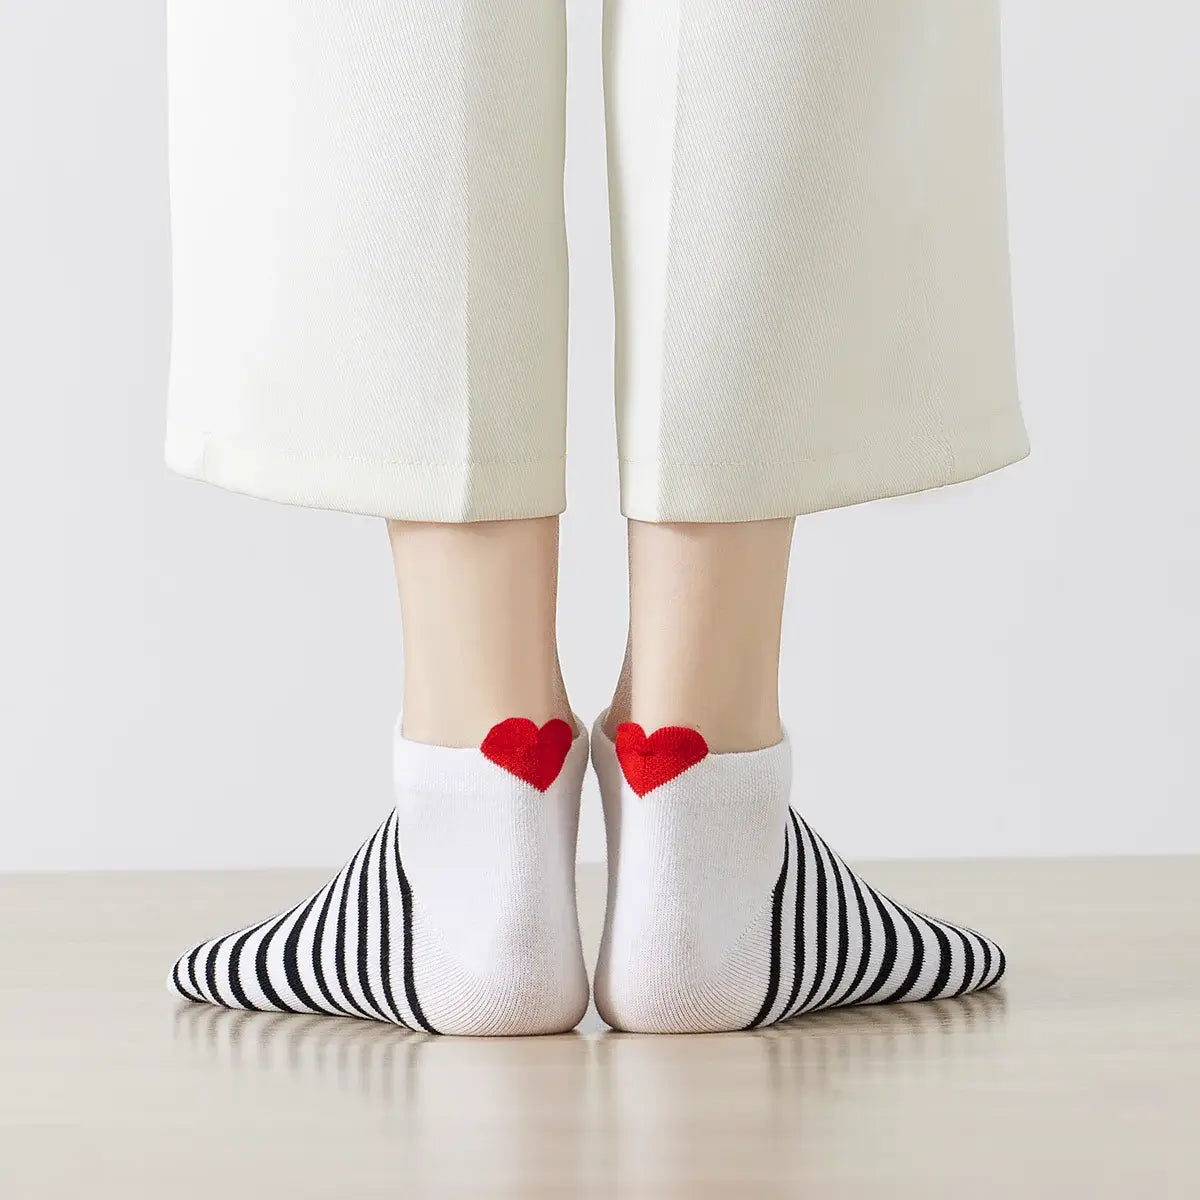 Chaussettes rayure blanche en coton à motif cœur marine pour femme | Chaussettes douces et respirantes | Un cadeau parfait pour les femmes de tous âges | Disponibles à un prix abordable.